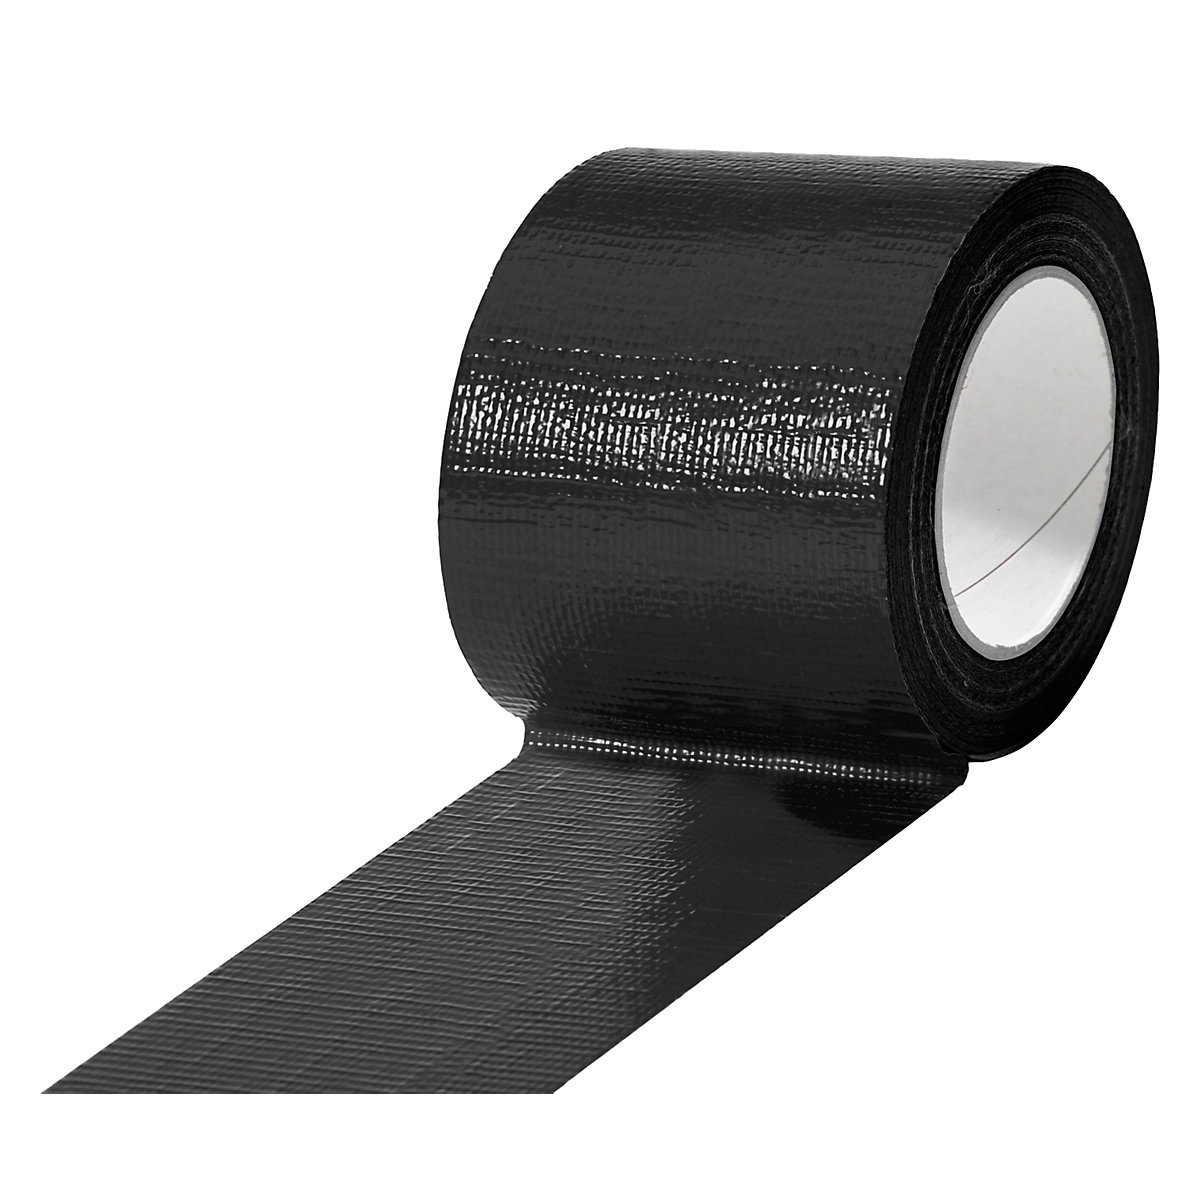 Traka od tkanine, u različitim bojama, pak. 12 rola, u crnoj boji, širina trake 75 mm-10